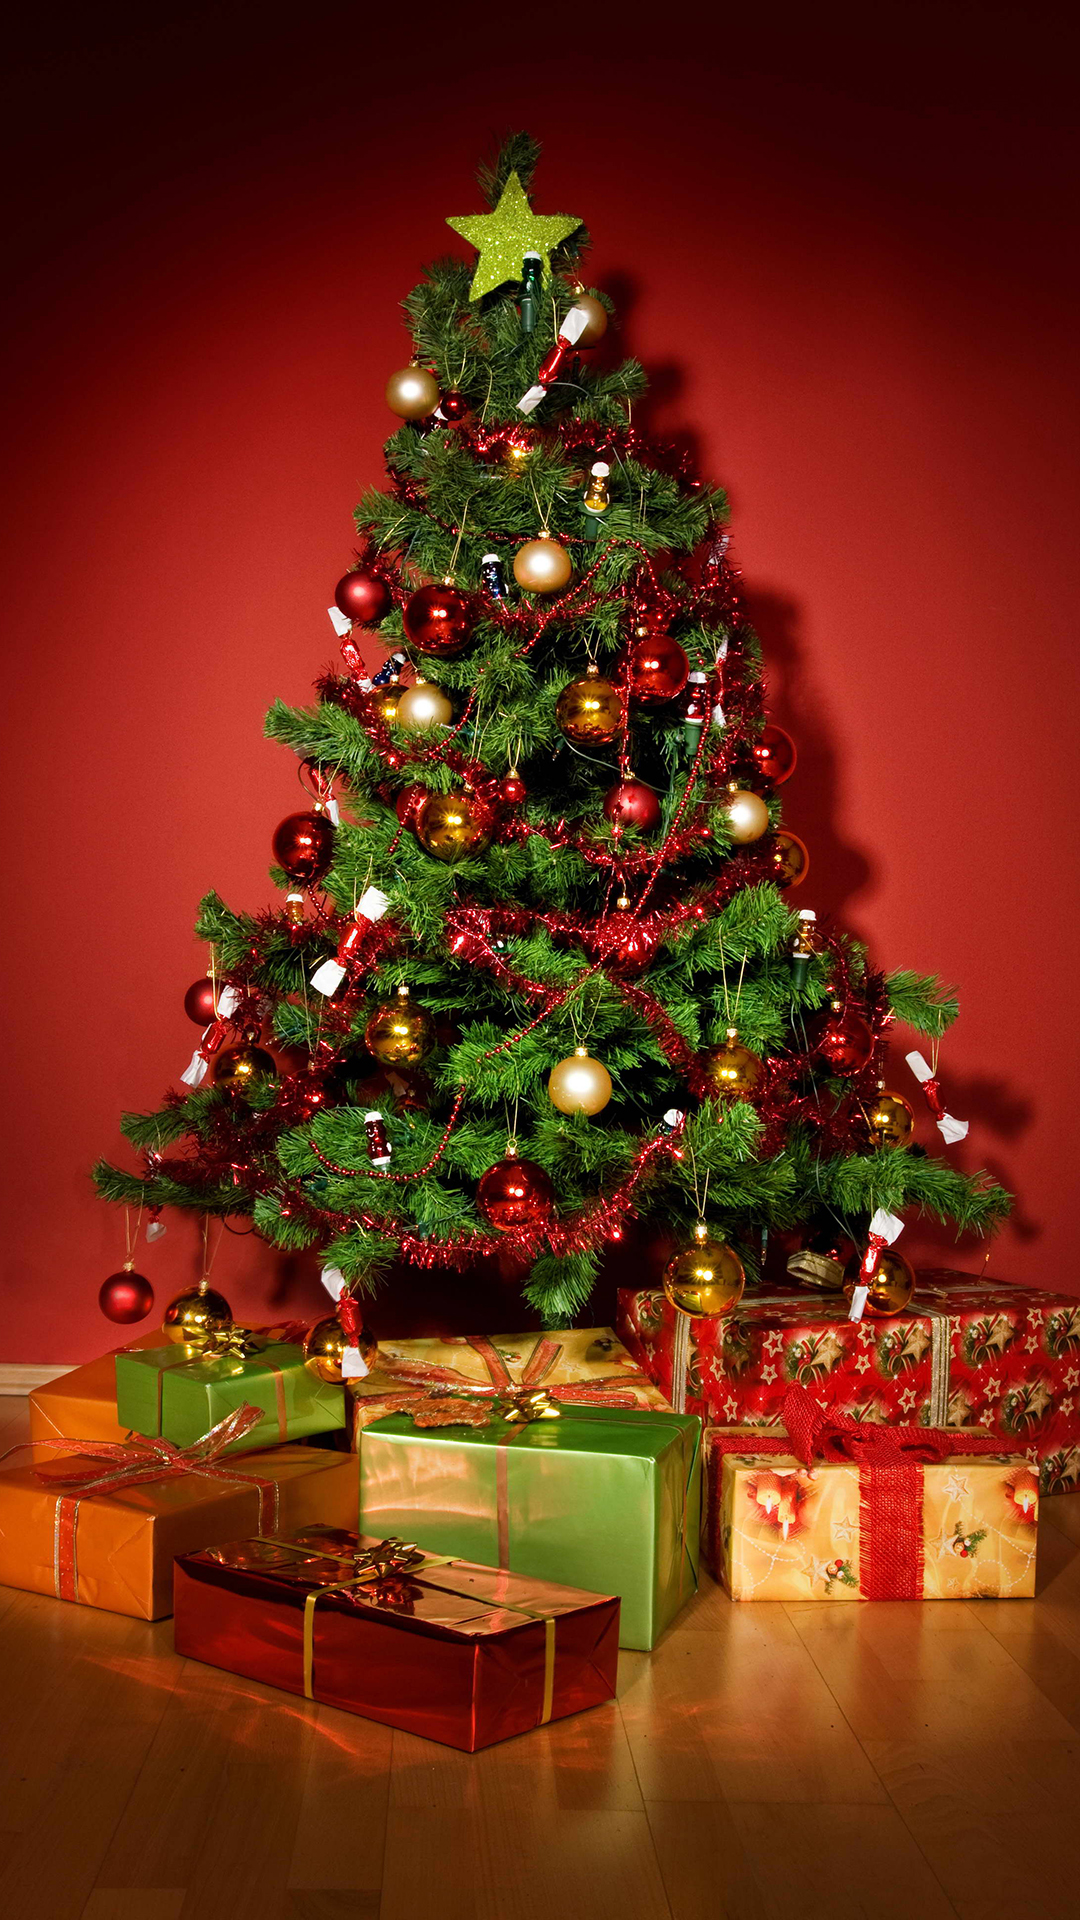 carta da parati dell'albero di natale,albero di natale,decorazione natalizia,natale,albero,ornamento di natale